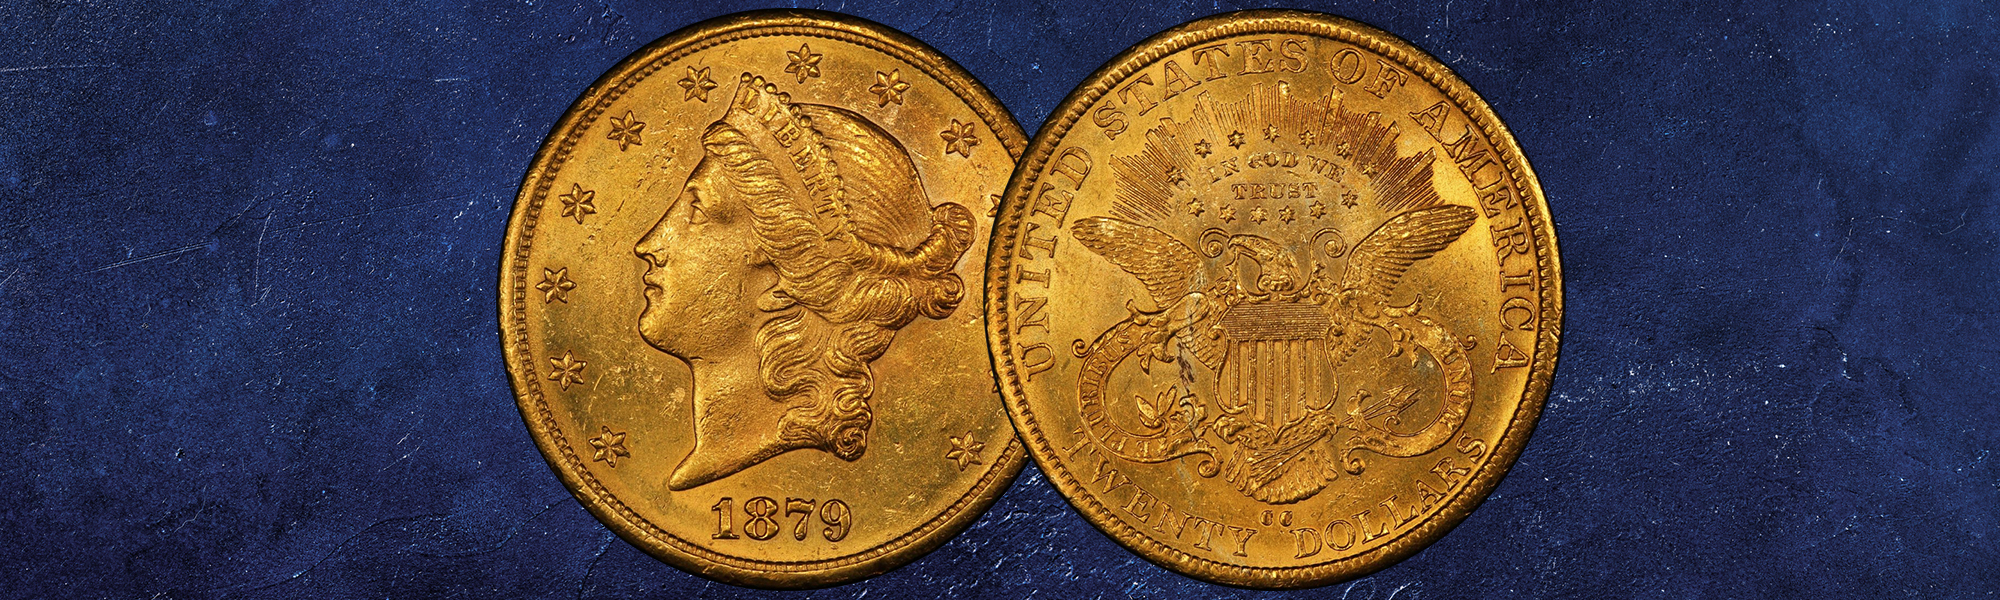 the-liberty-5-gold-coin-coin-value-more-international-precious